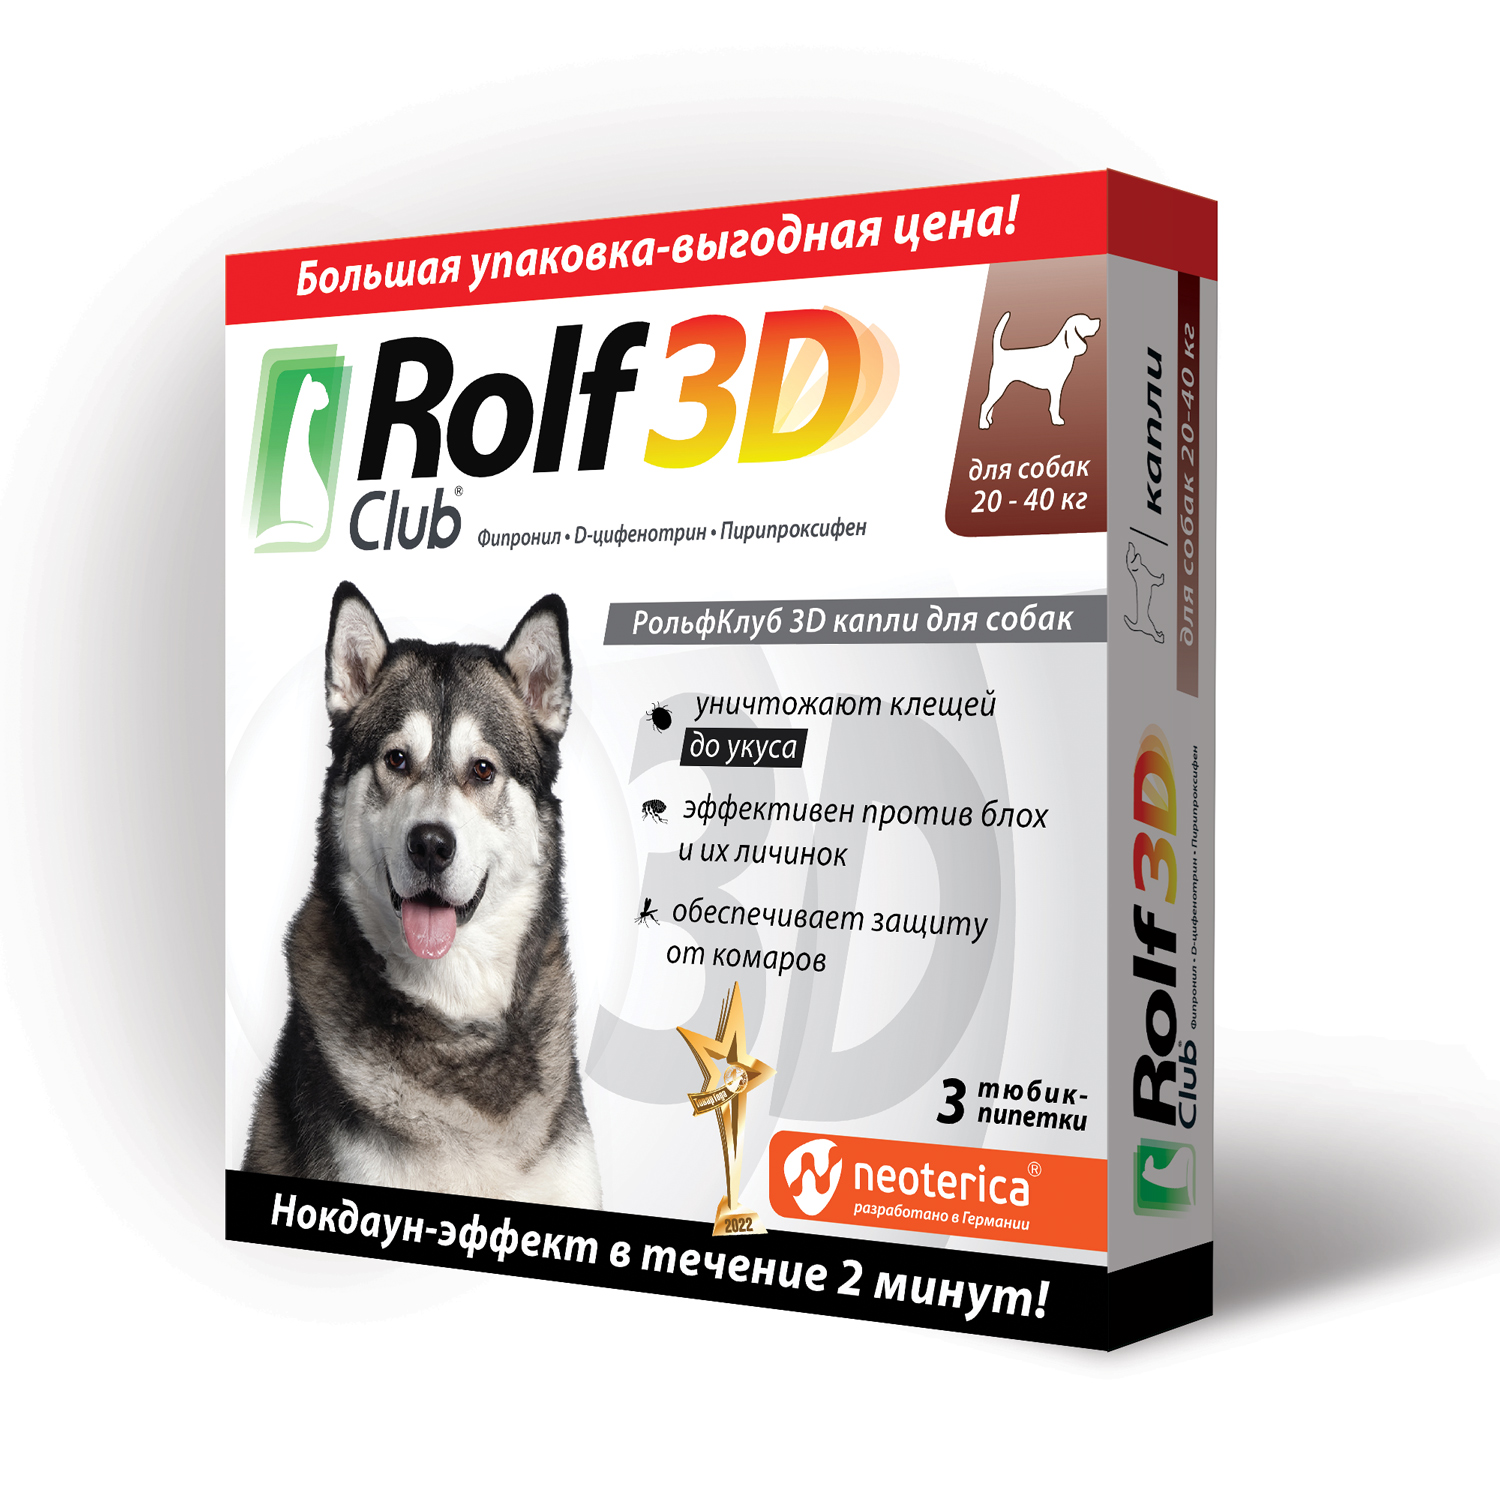 Рольф 3д капли для собак отзывы. Rolf Club 3d капли для собак 20-40 кг, арт. R405. Капли от клещей для собак РОЛЬФ 3д. РОЛЬФ клаб 3д для собак. РОЛЬФ клуб 3d капли для собак.